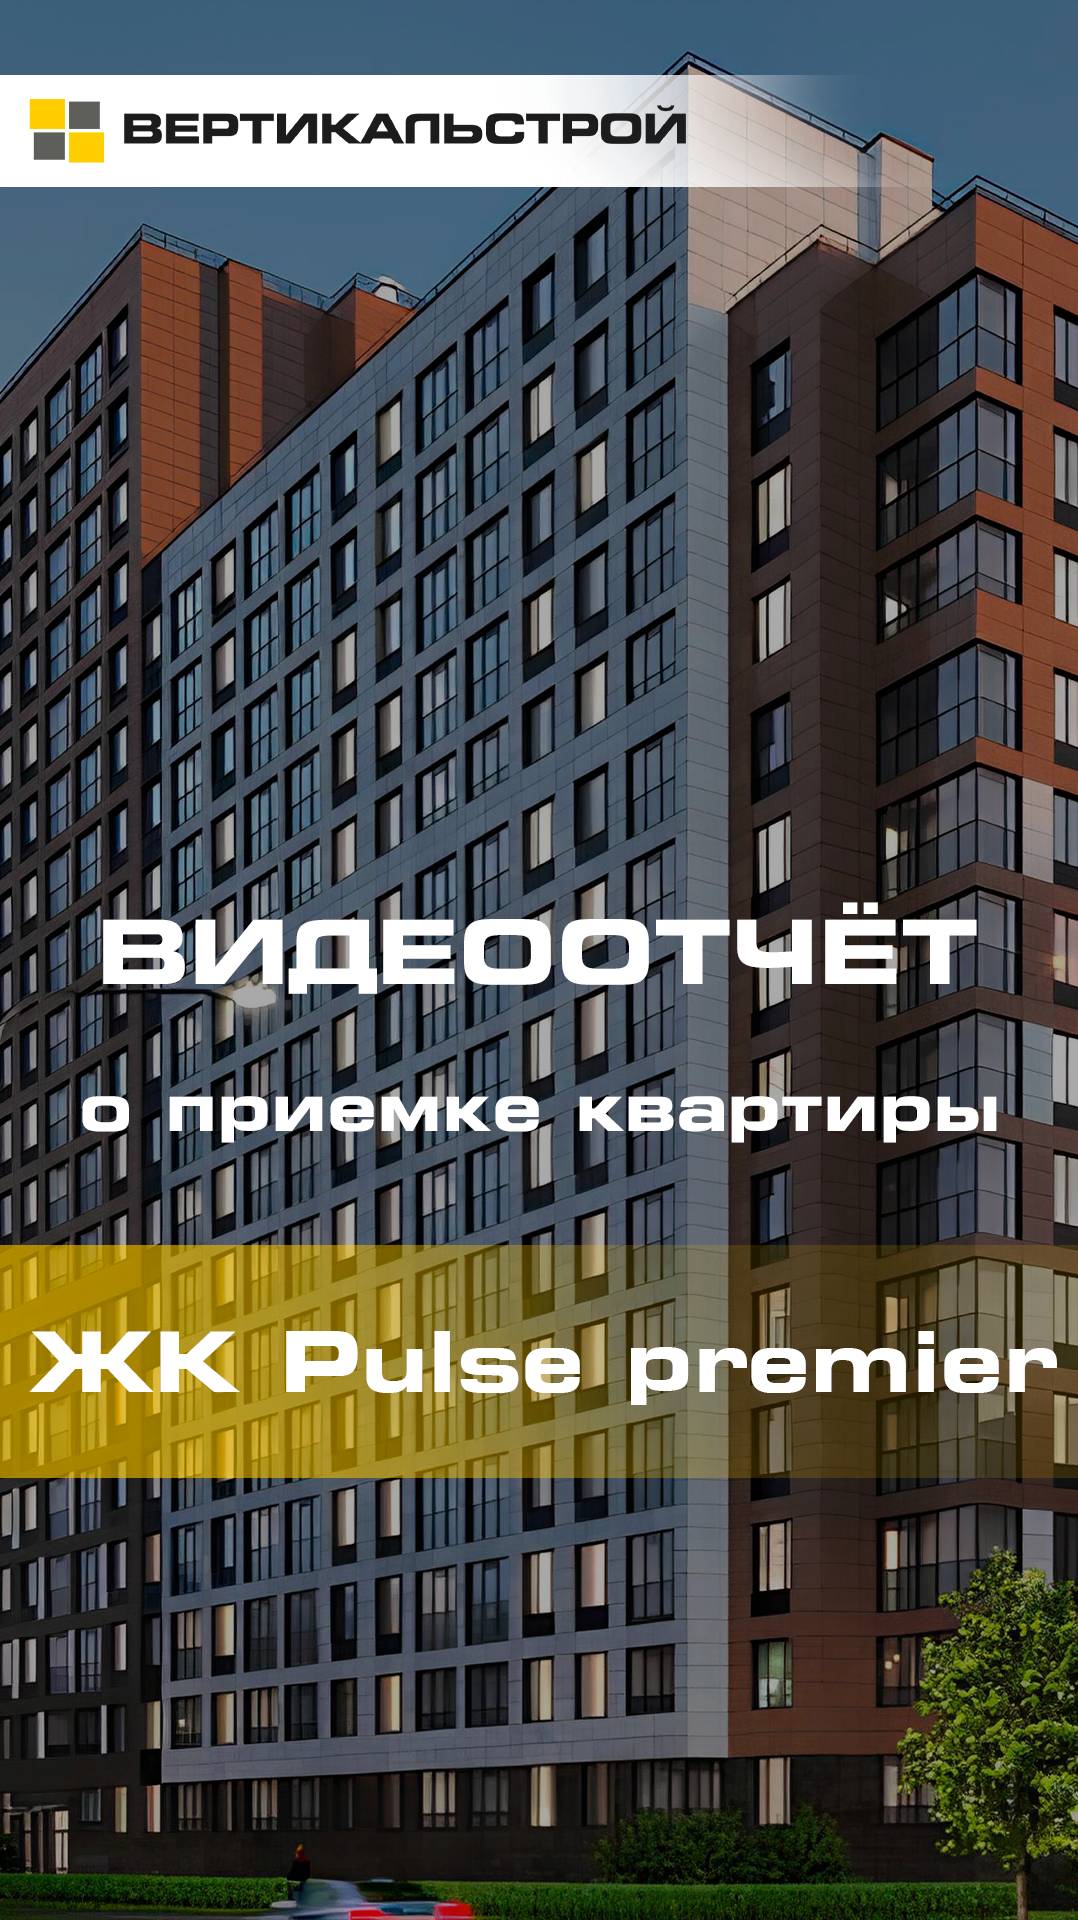 Pulse Premier от Setl Group - Приёмка квартиры от ВЕРТИКАЛЬСТРОЙ